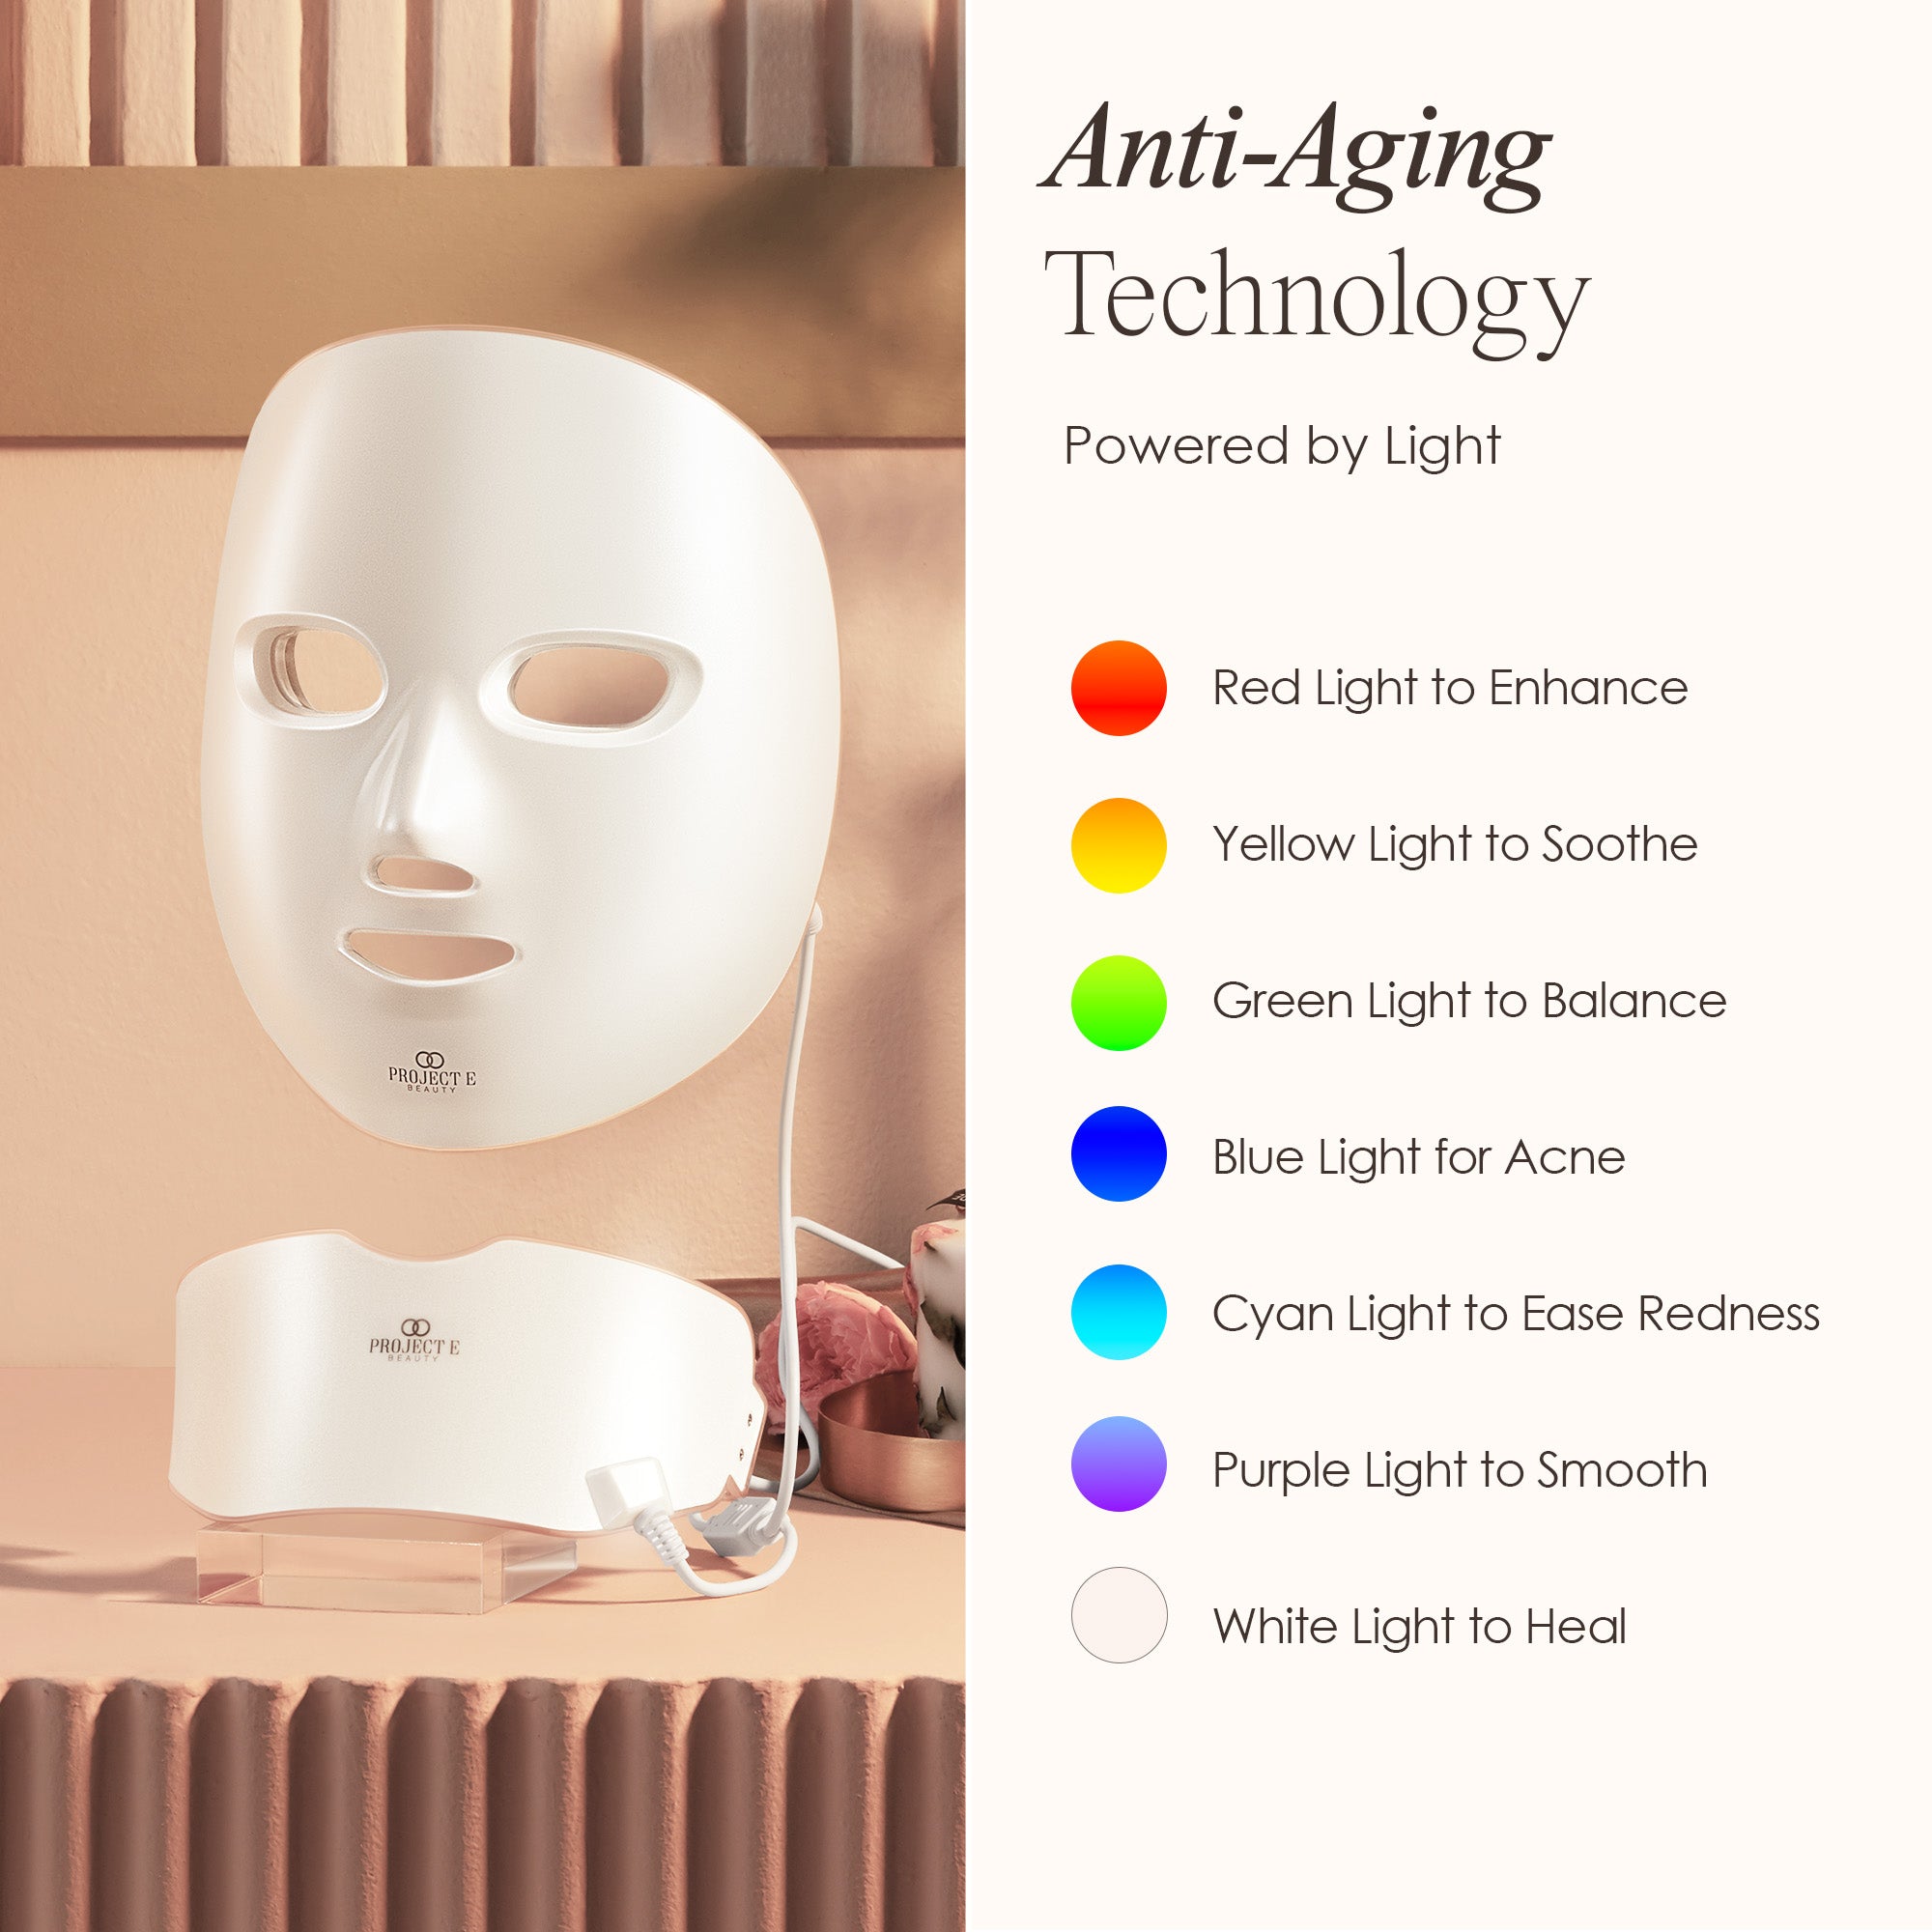 LightAura Plus | LED Face & Neck Mask